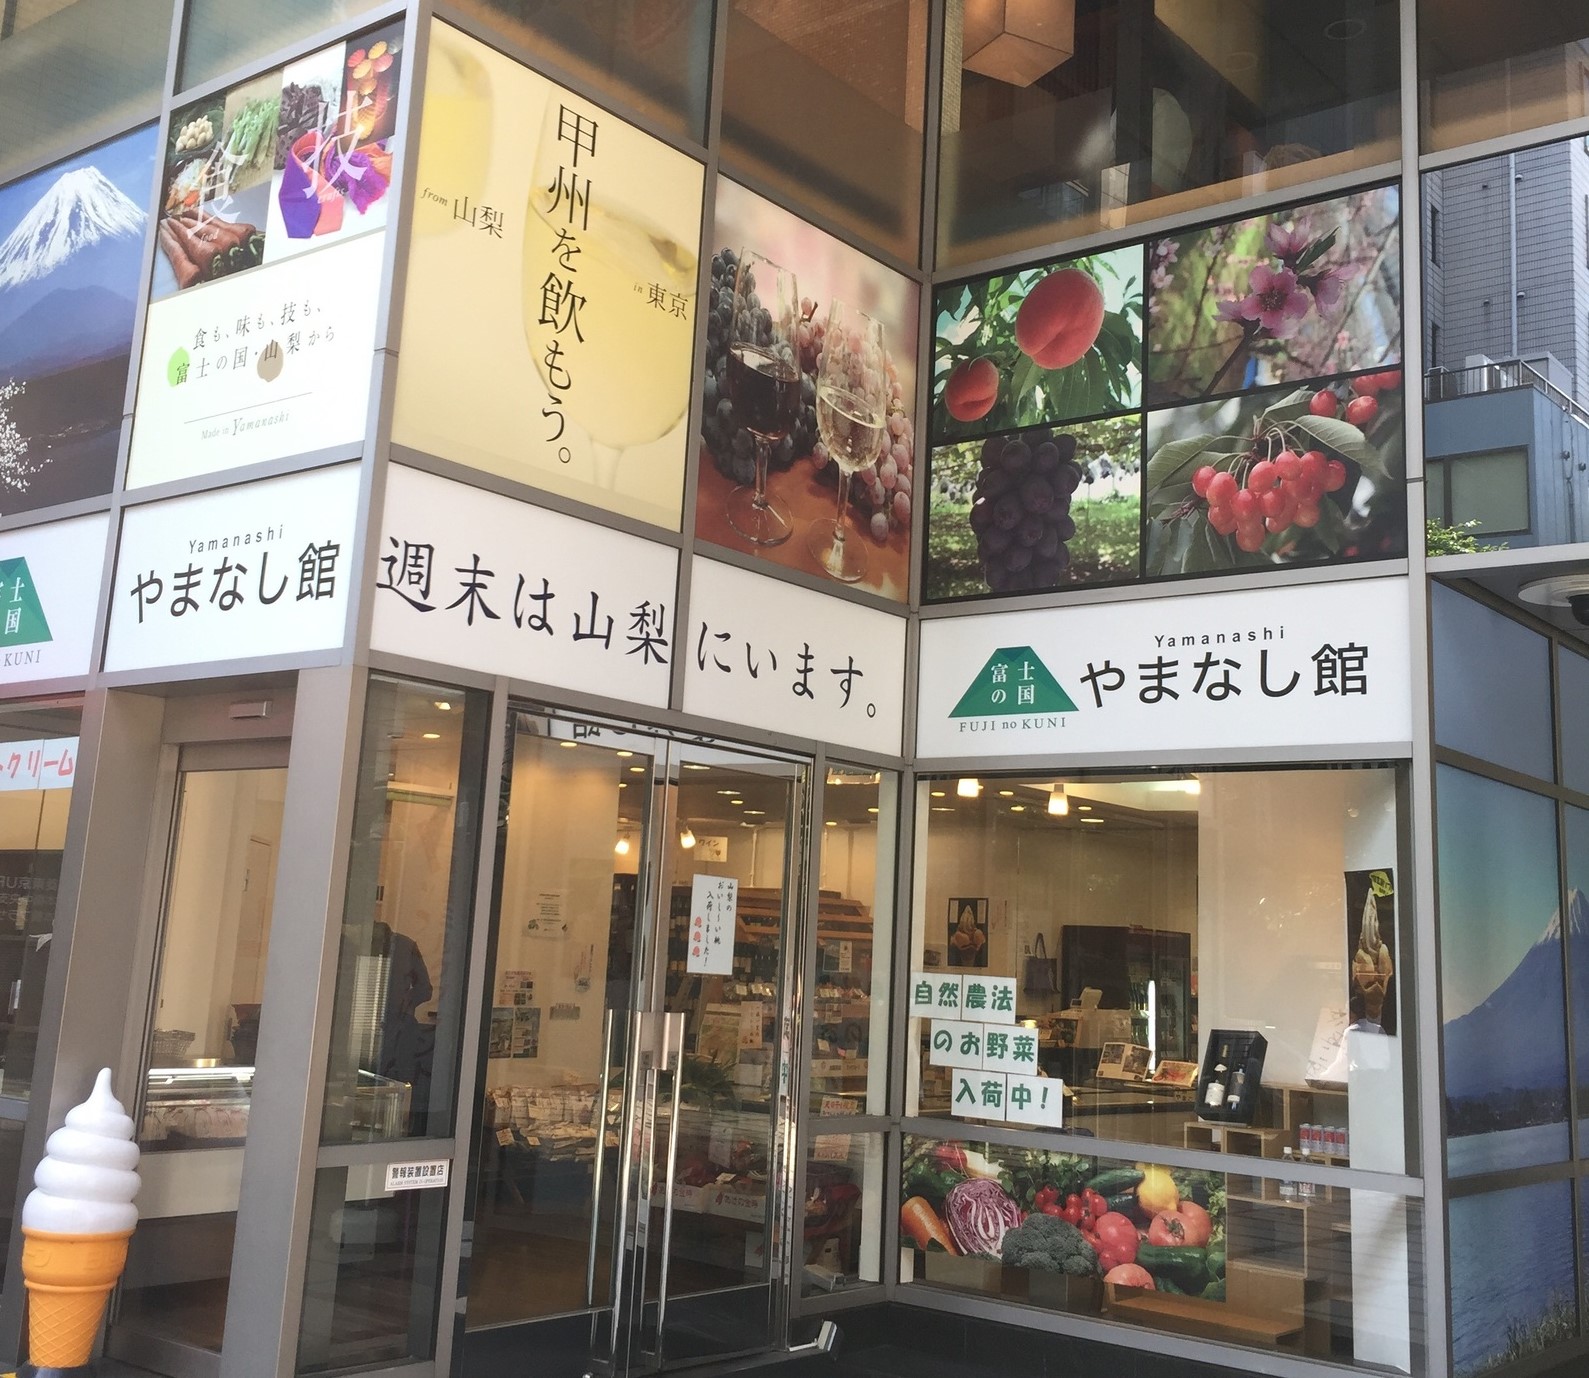 スポット 富士の国やまなし館 公式 東京都千代田区の観光情報公式サイト Visit Chiyoda